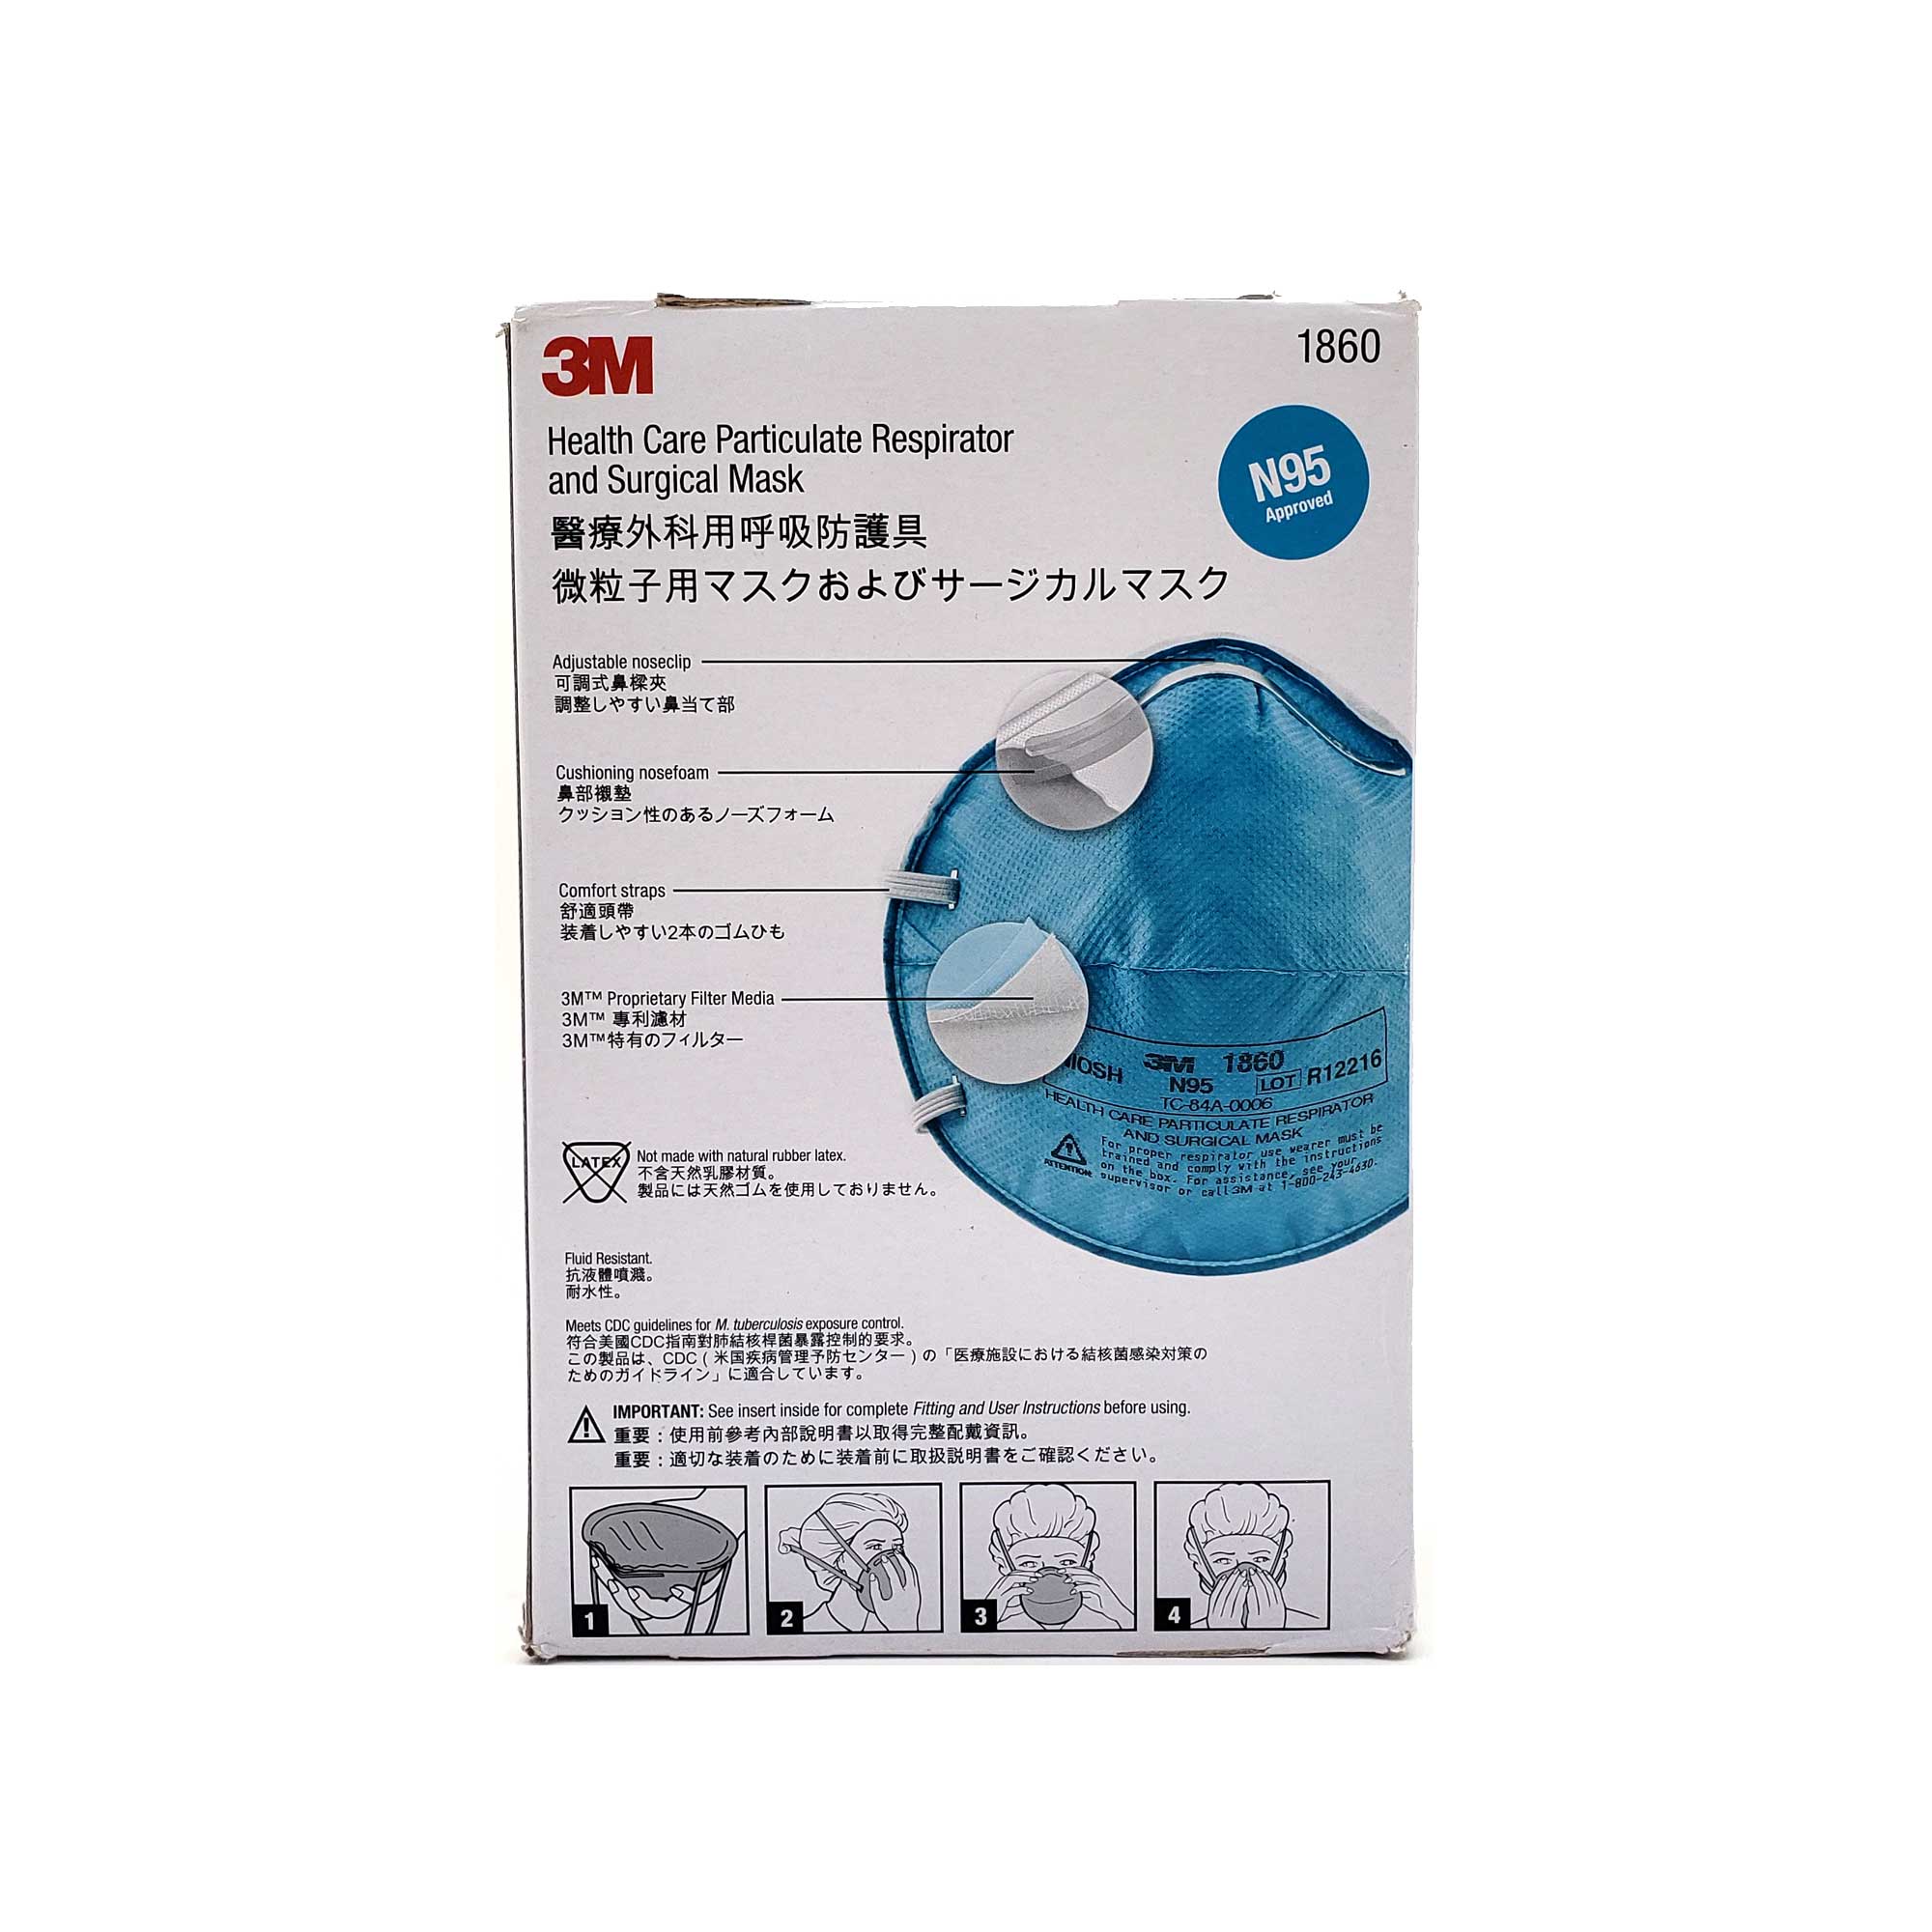 3m-1860 Mask 3m1860 Mask 1860-3m - Explore China Wholesale 3m1860 and 3m,  3m 1860 Mask, 3m 1860